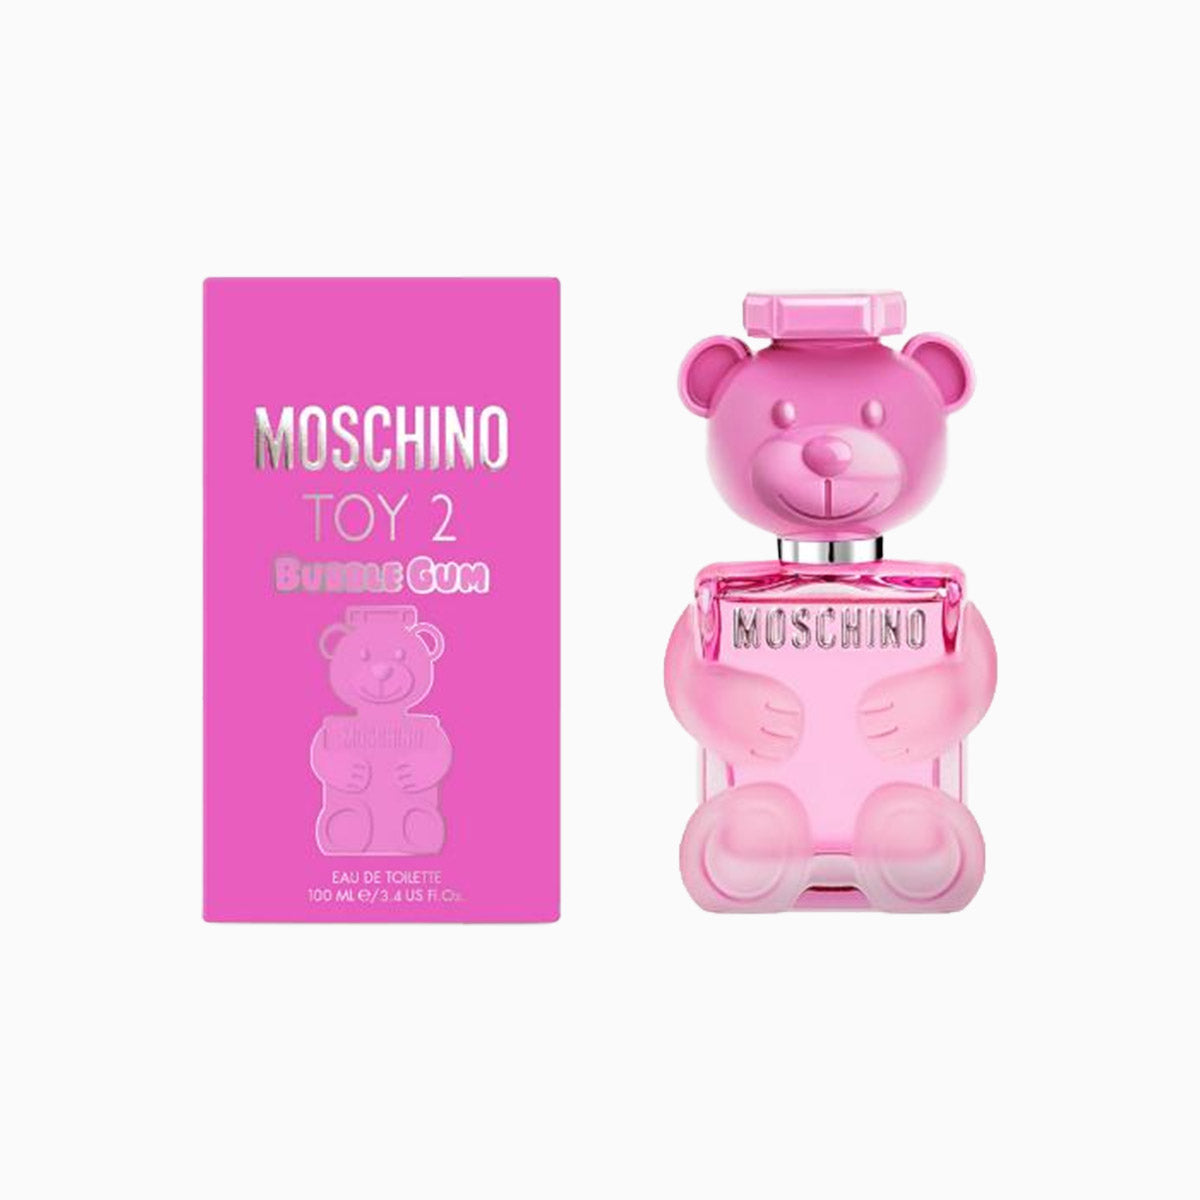 womens-moschino-ladies-toy-2-bubble-gum-spray-edt-spray-3-4-oz-perfume-8011003864089